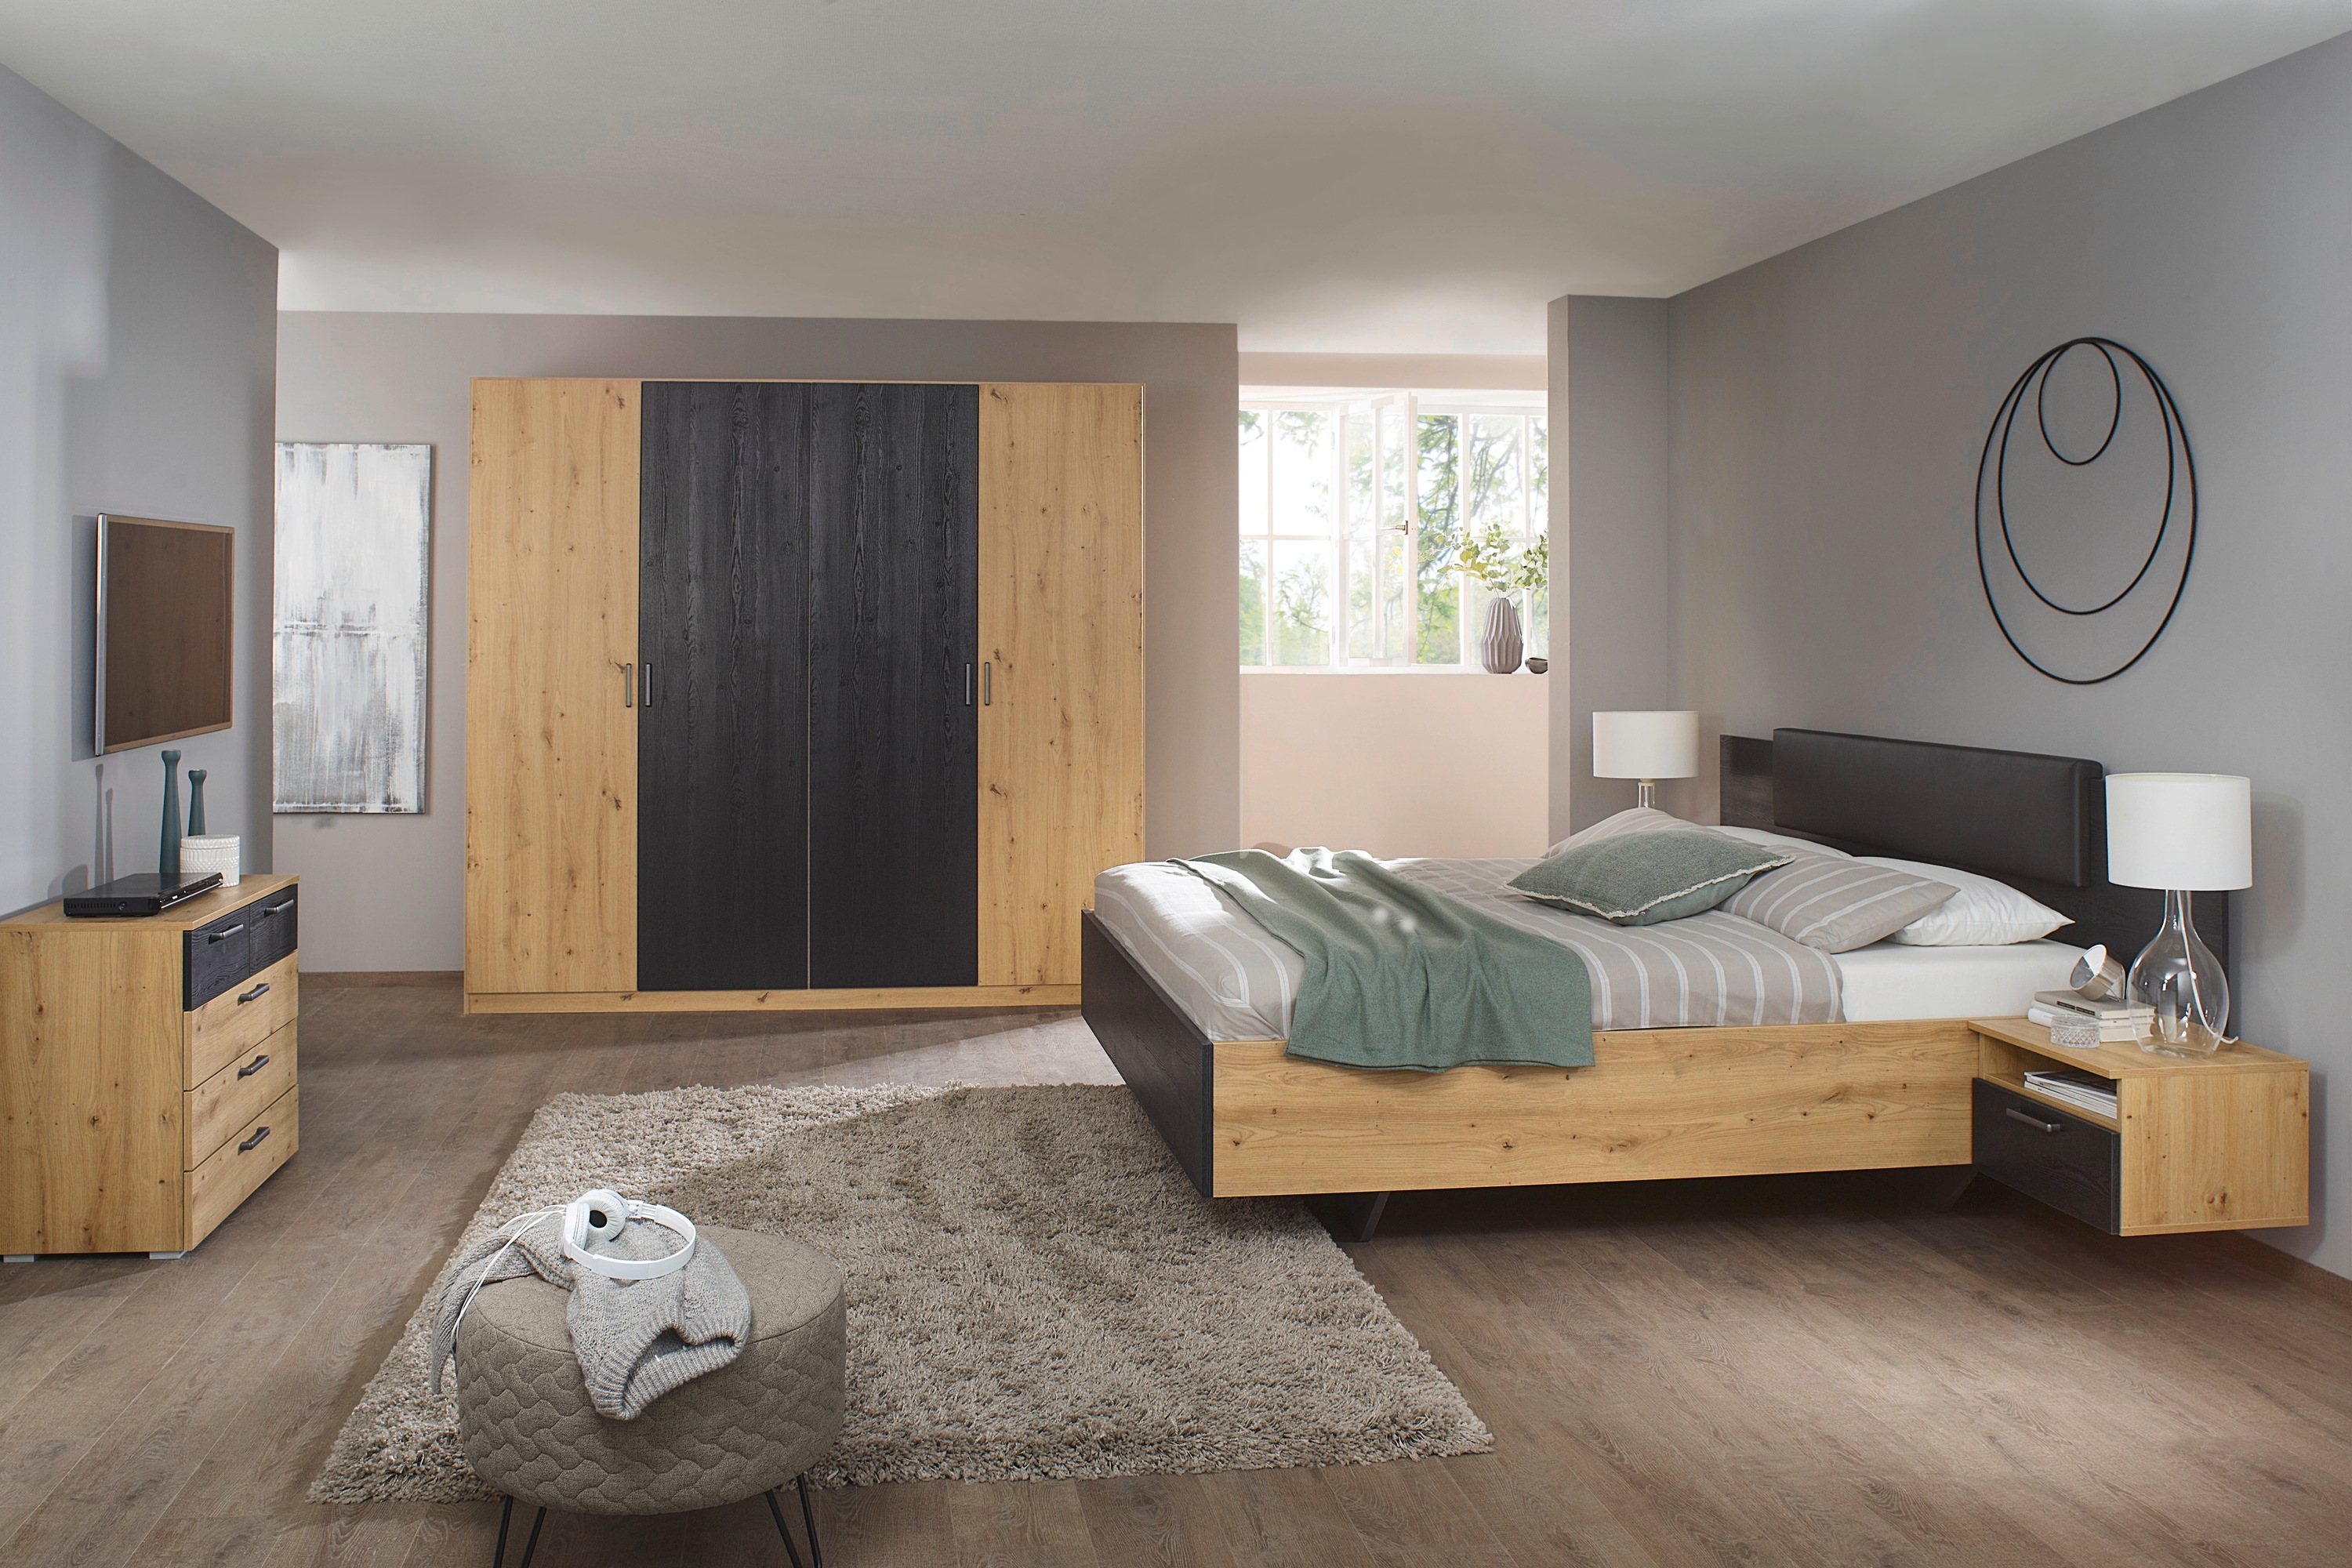 rauch Schlafzimmer-Set "Miro", Drehtürenschrank in 2 Breiten, Bett in 2 Größen und 2 Hängenachttische